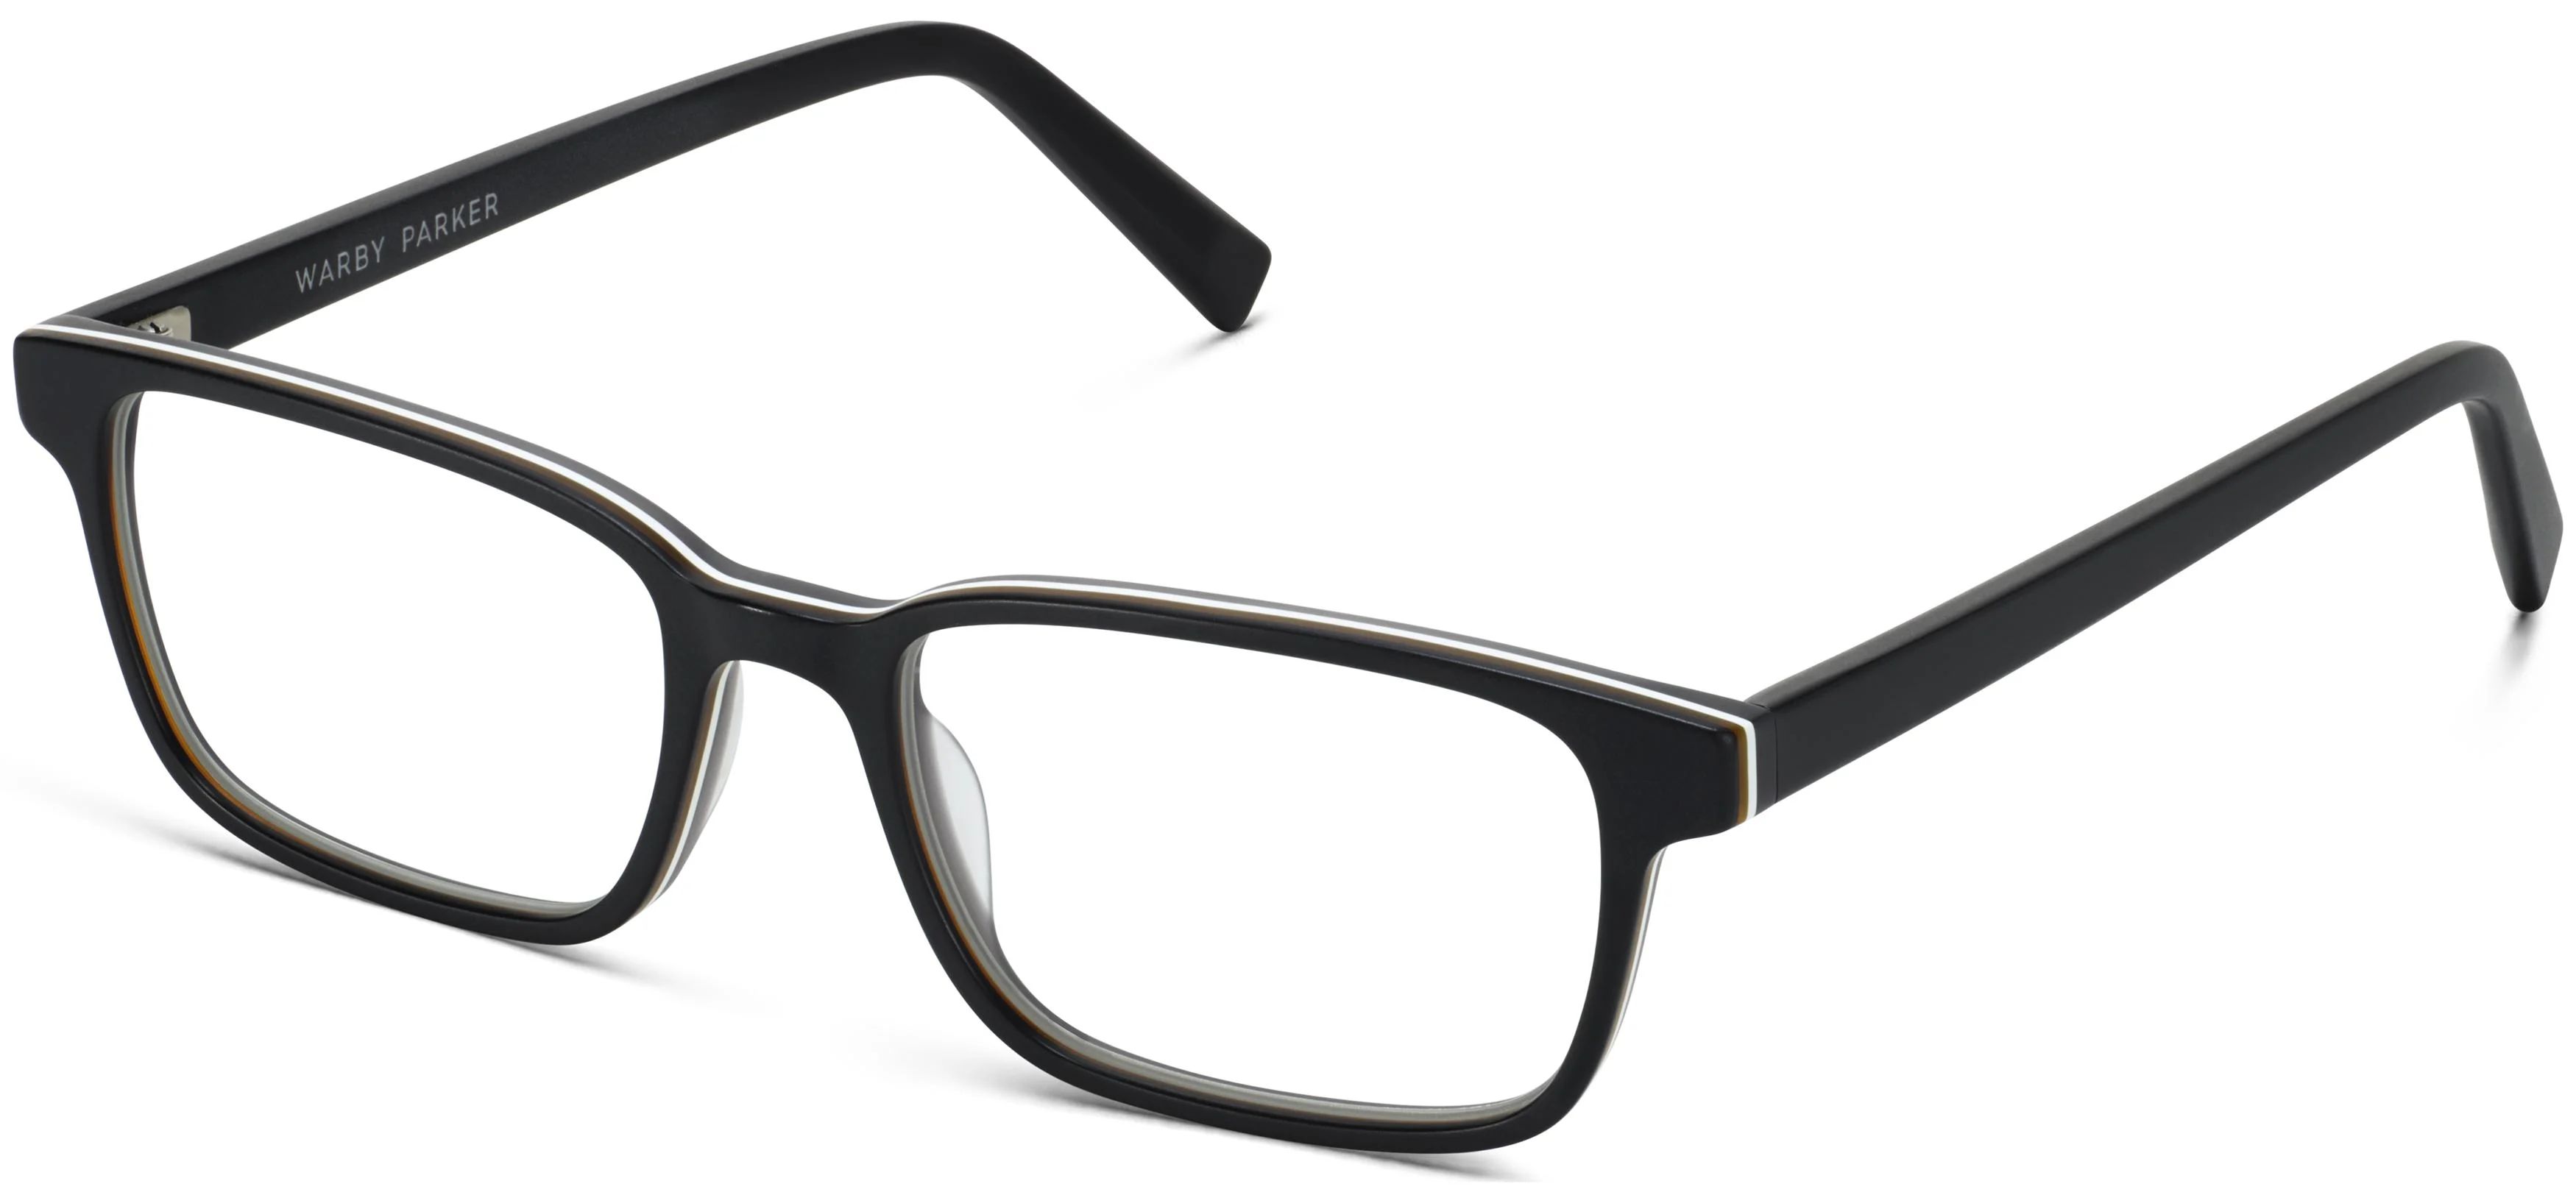 Crane Eyeglasses in Black Matte Eclipse | Warby Parker | Warby Parker (US)